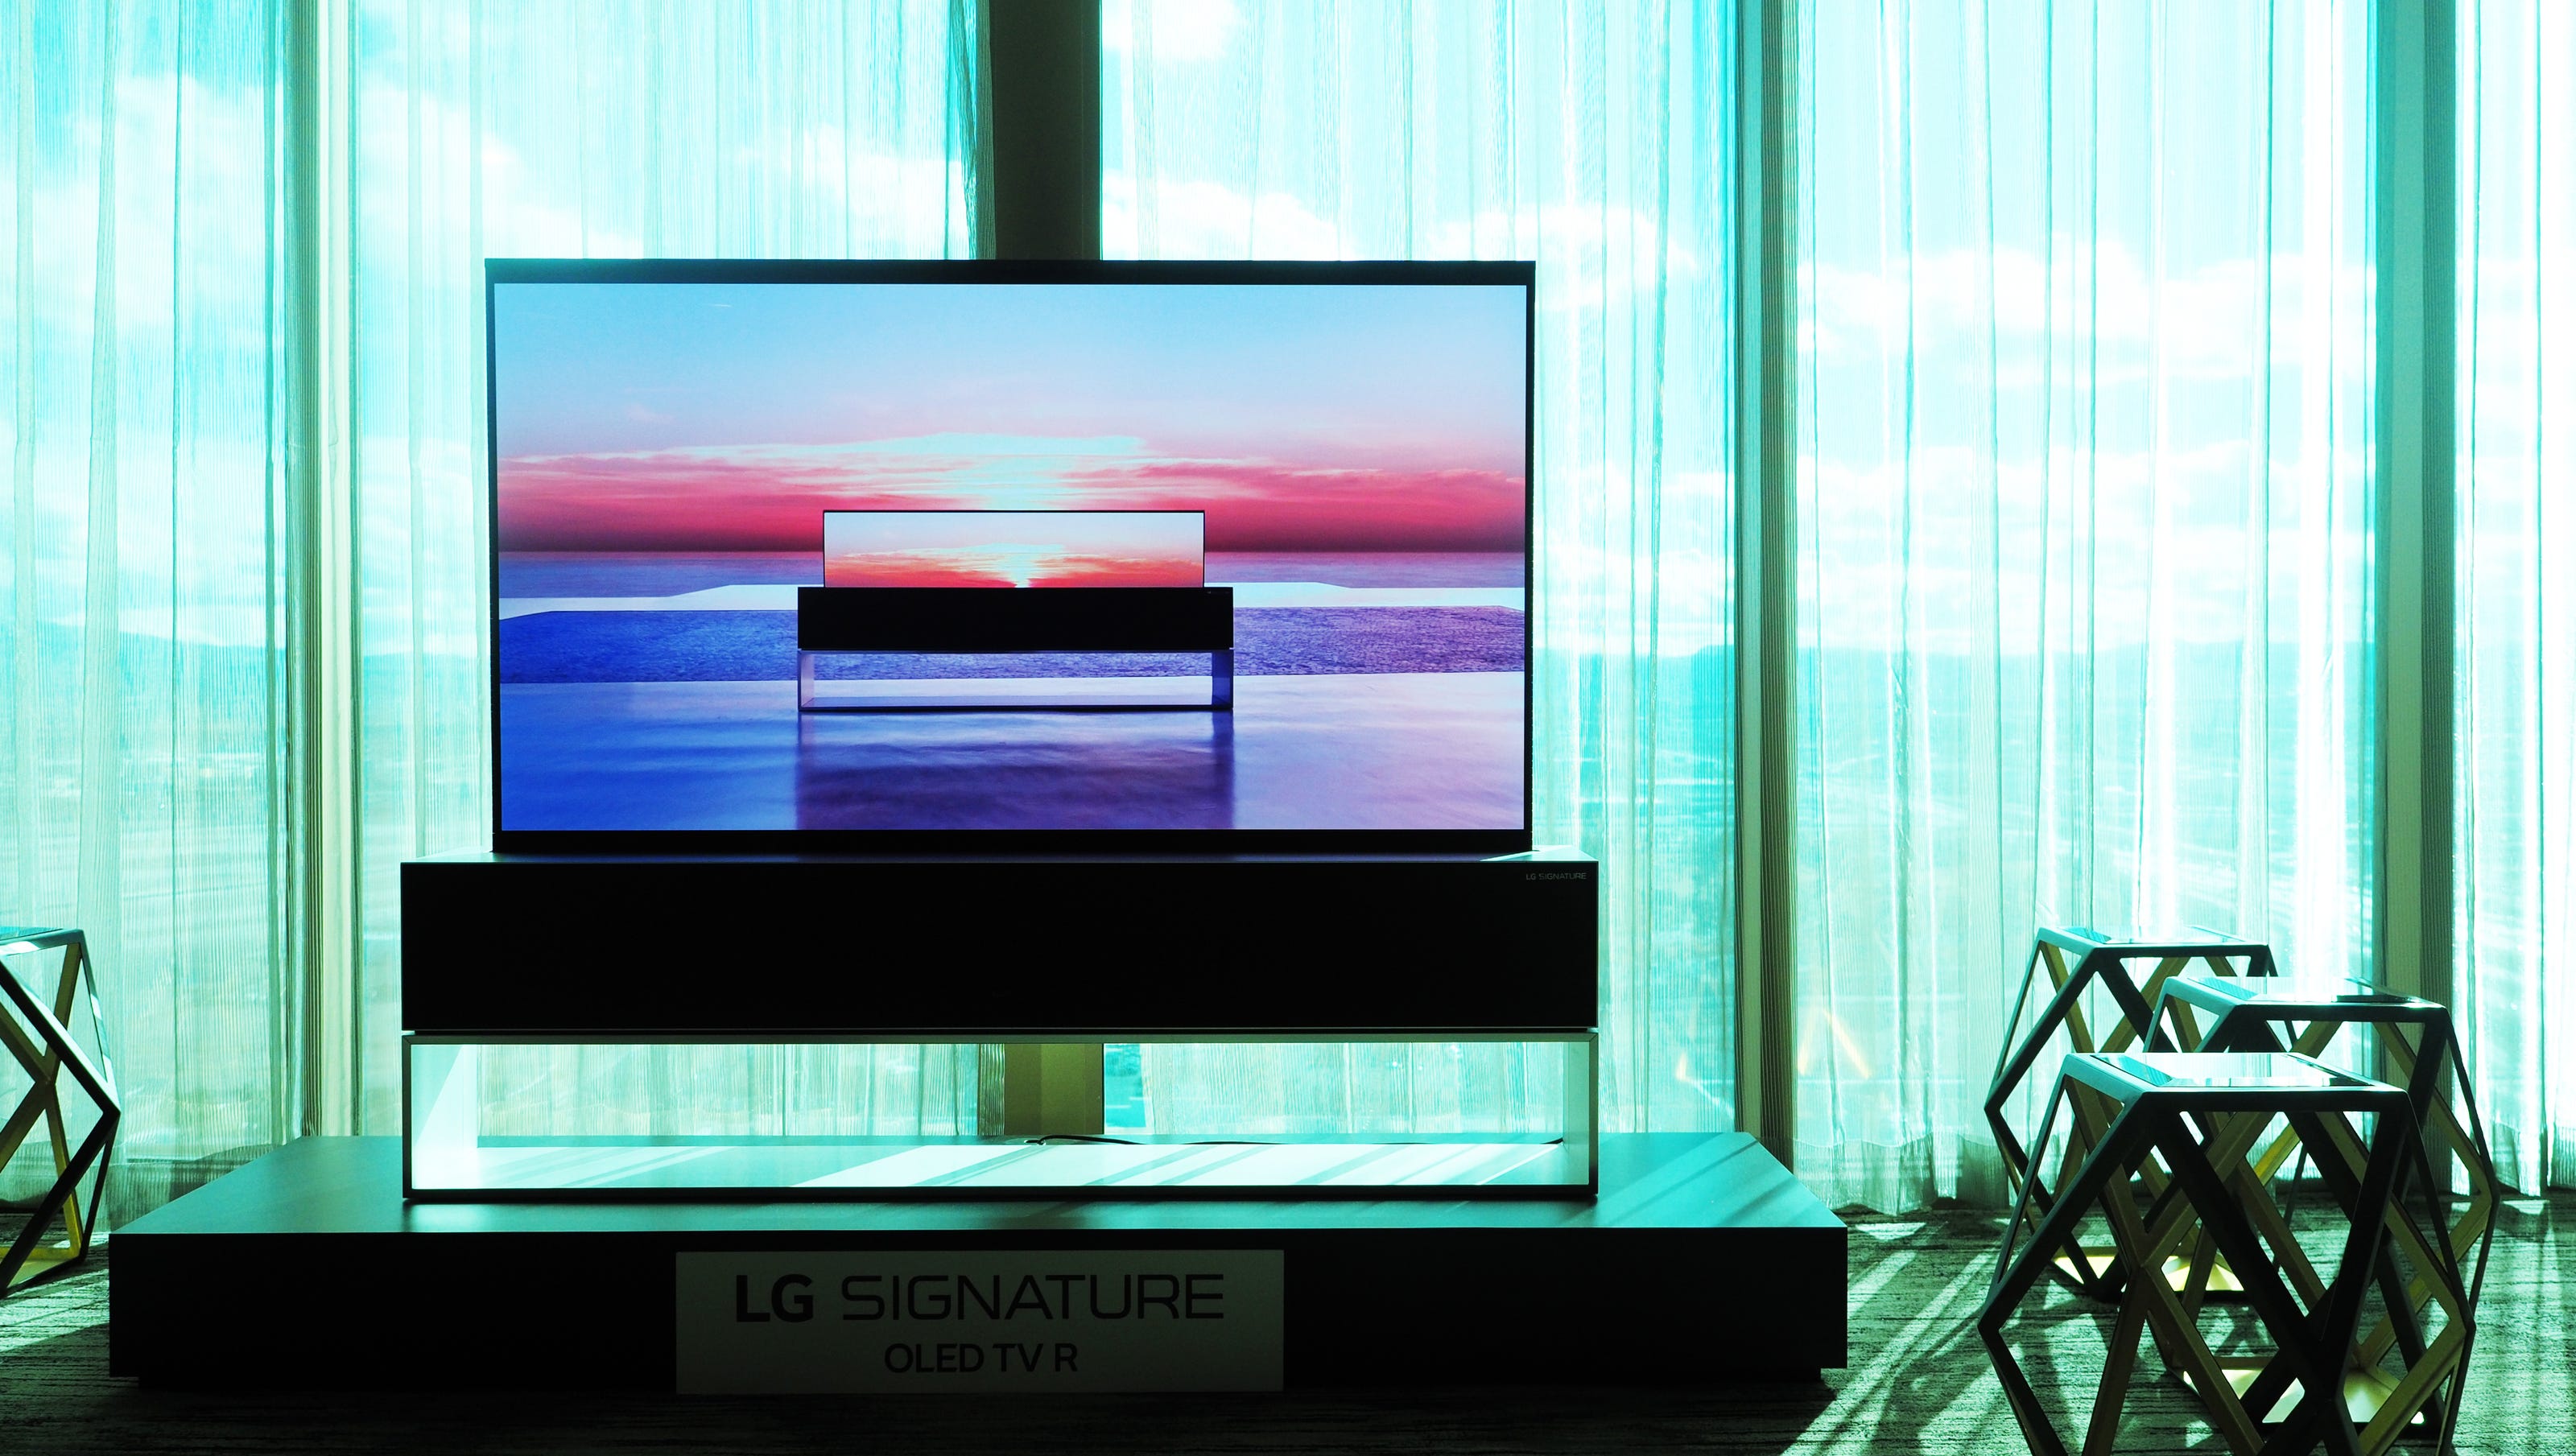 LG Rollable OLED. LG Signature 88. LG Signature 88 8k OLED телевизор. LG TV/Bar OLED стенд. Телевизоры lg 2019